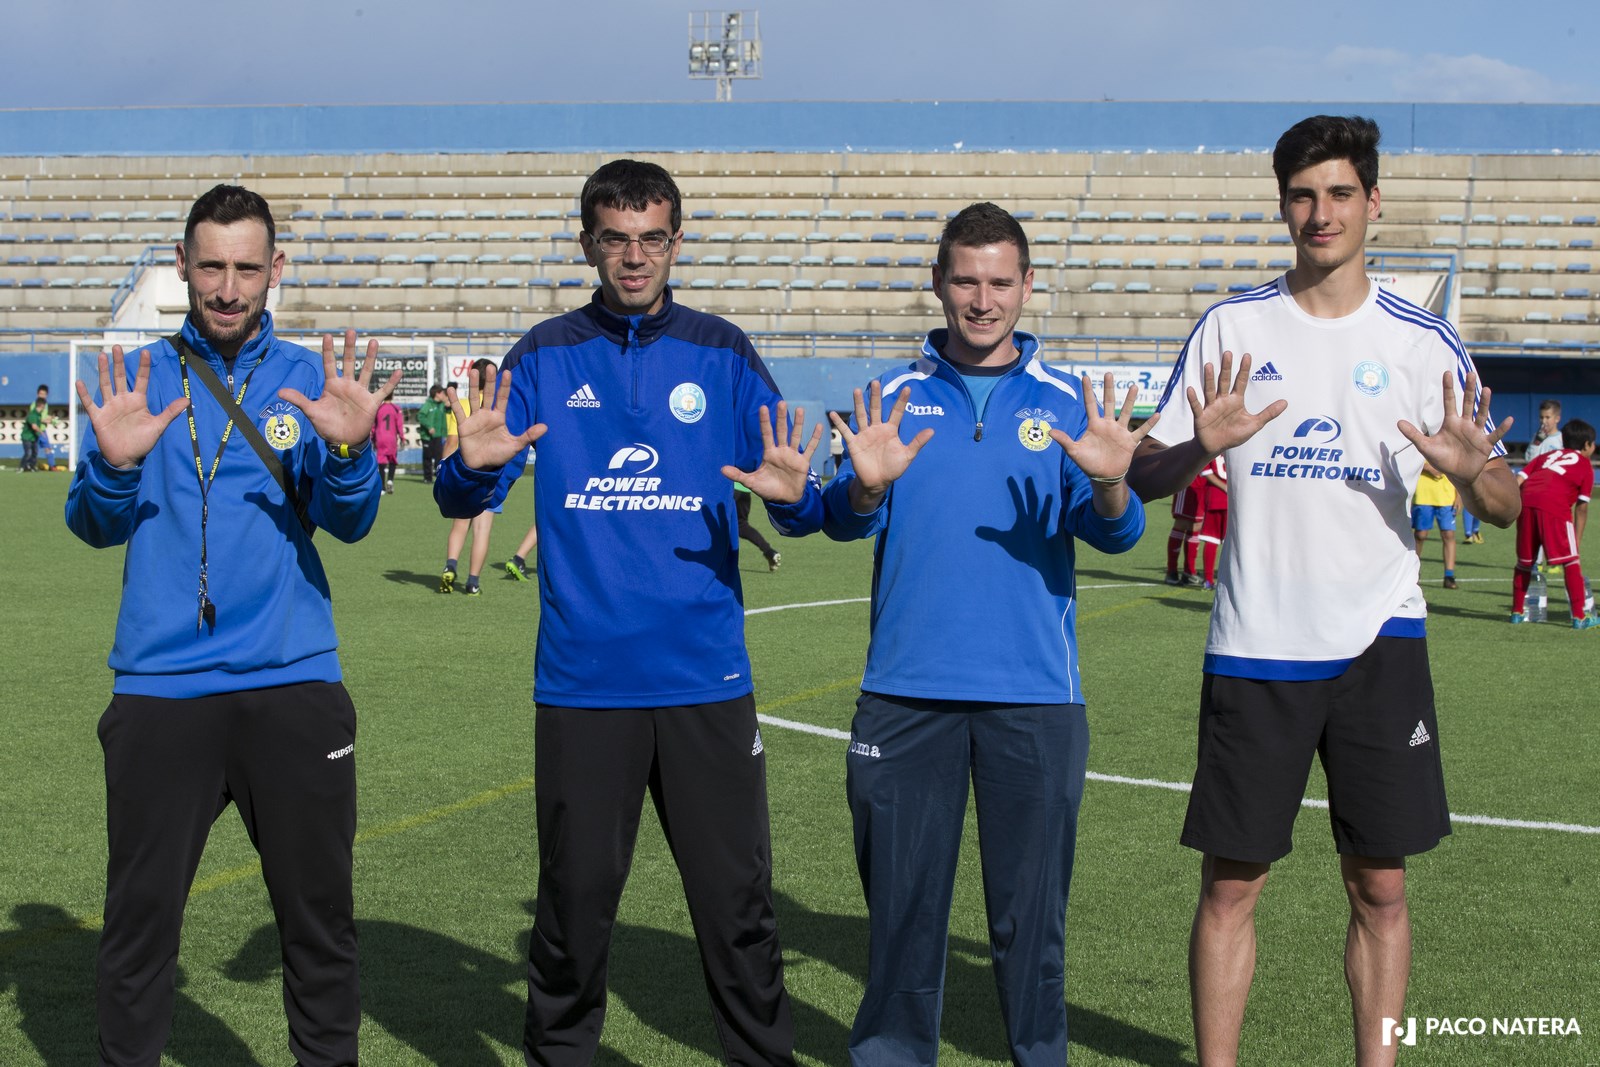 De izquierda a derecha: Ramiro, Jordi Riera, Juanan y Aitor, entrenadores de la base que muestran con sus manos los 10 años de Fútbol Pitiuso.